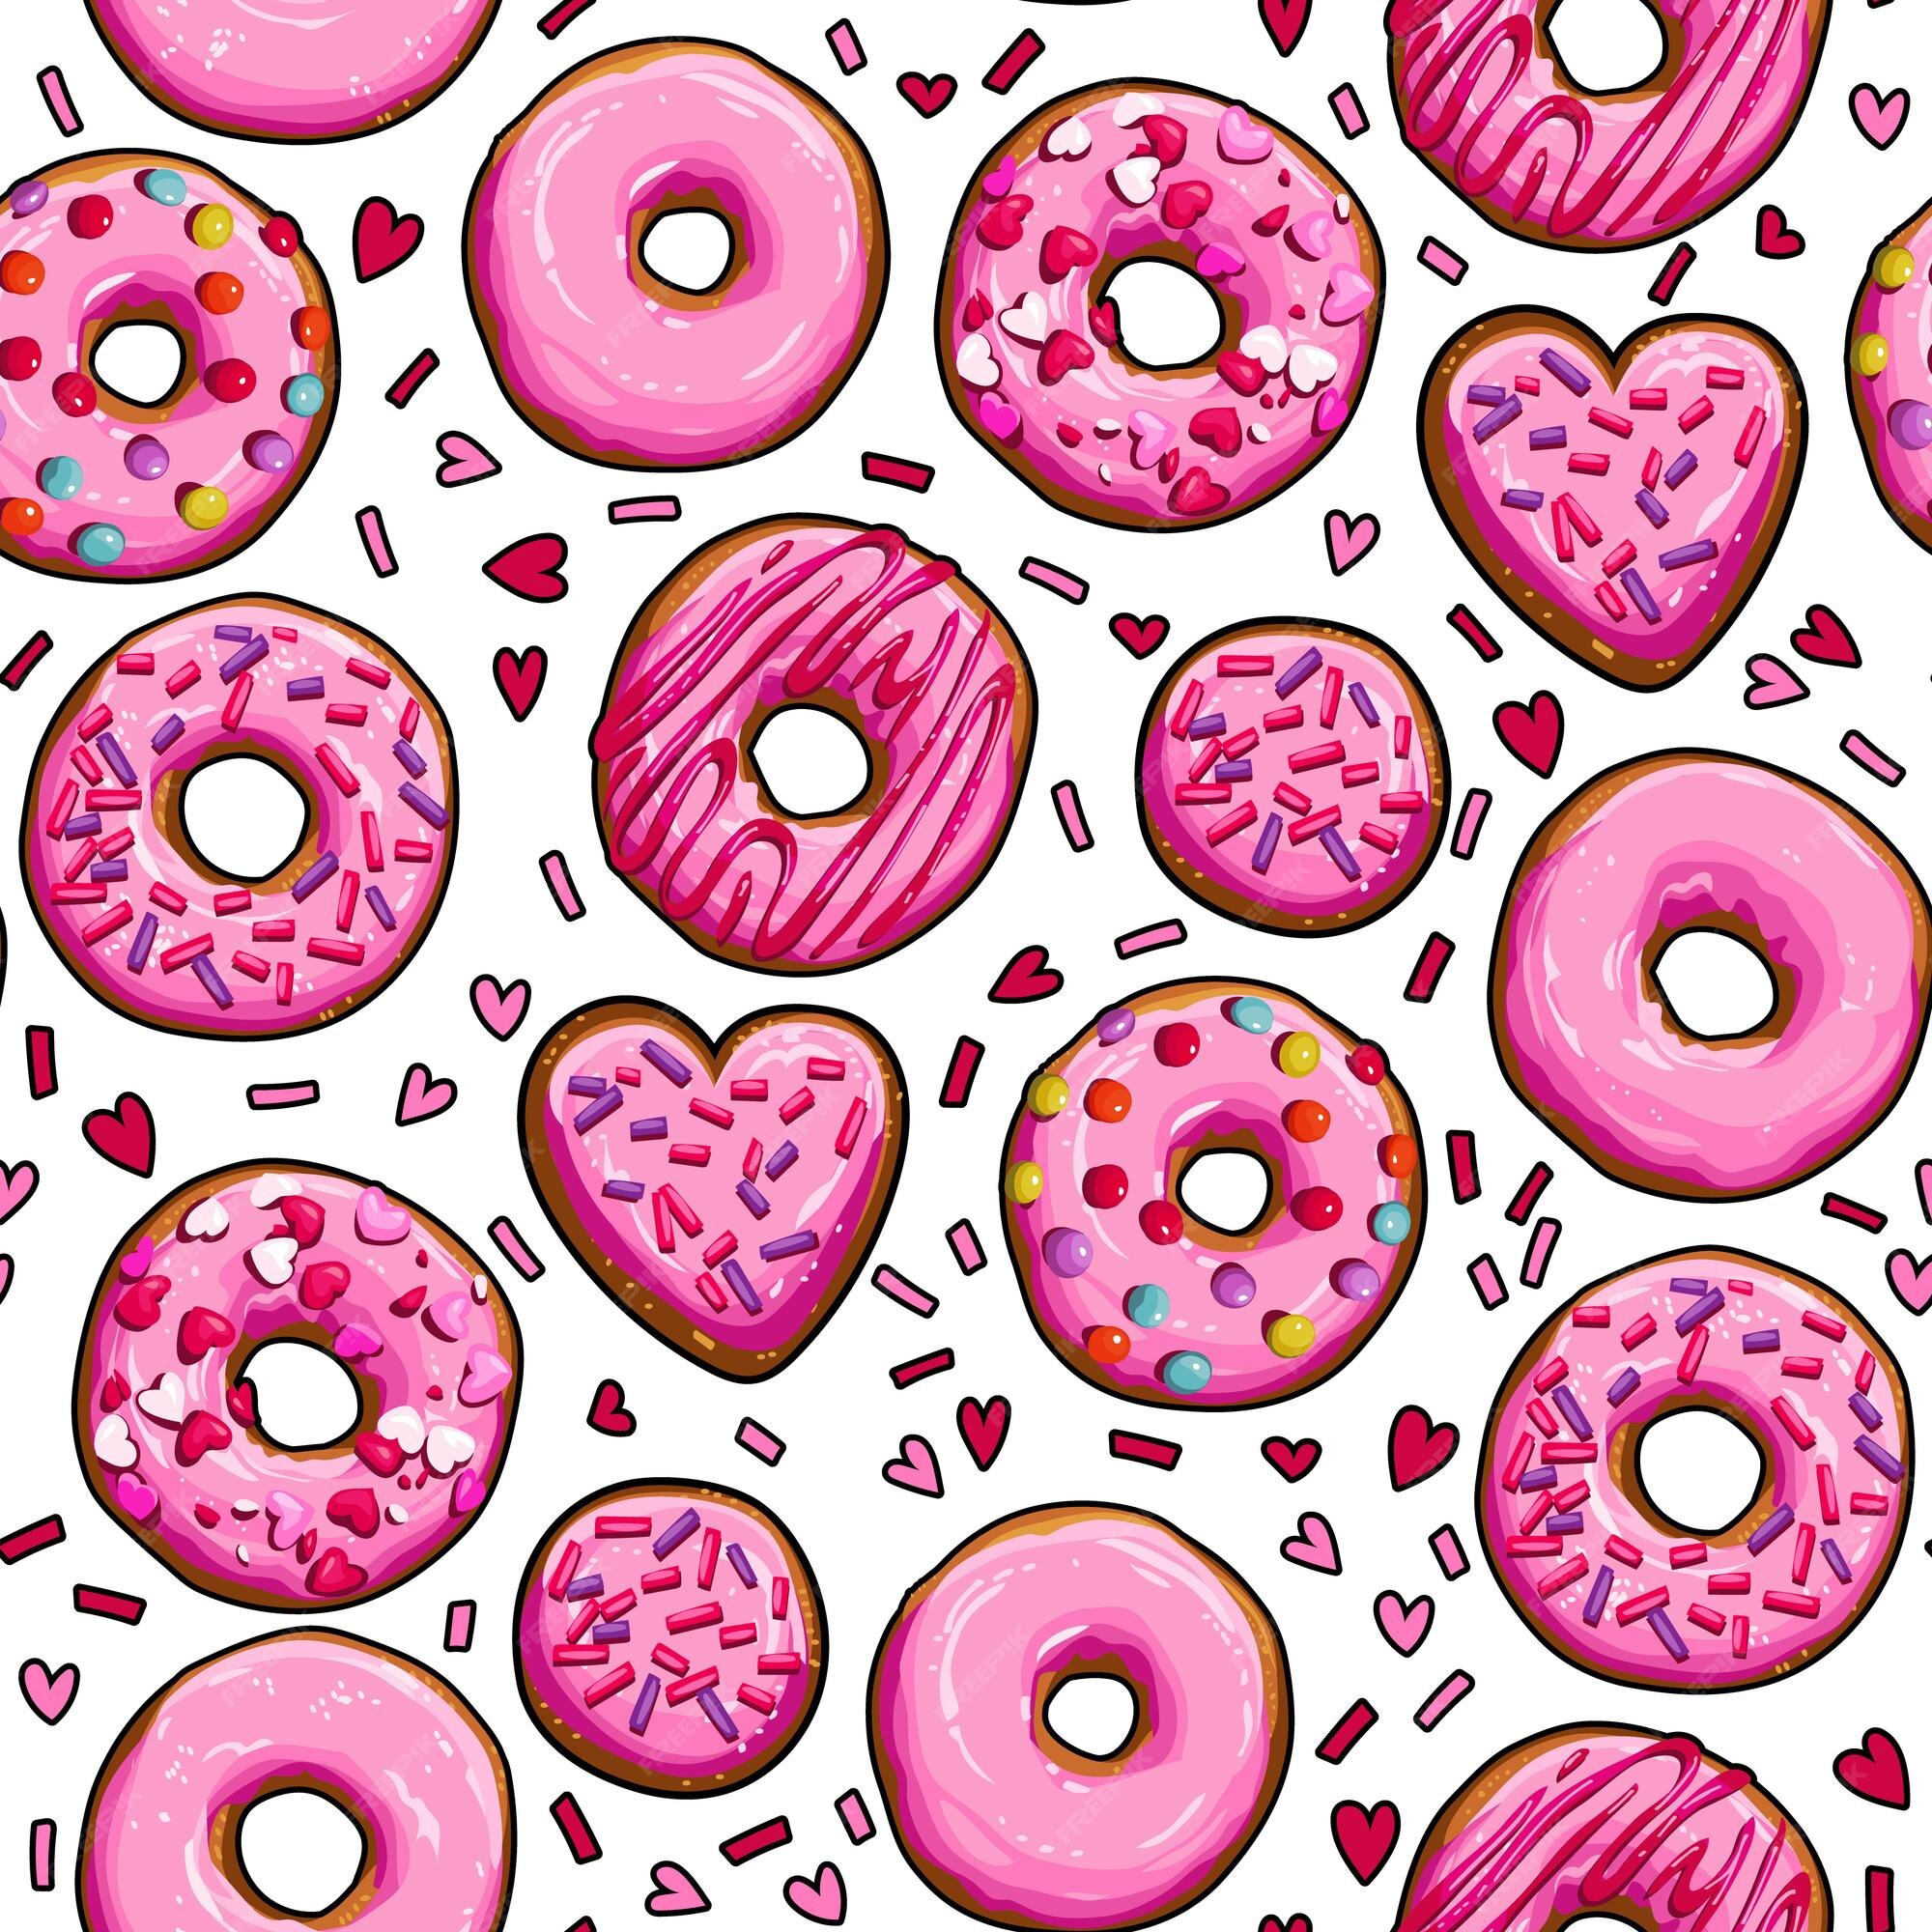 Bạn có thích bánh donut hồng không? Hãy thử áp dụng chúng vào hình nền của bạn. Chúng tôi mang đến cho bạn một bộ sưu tập hình nền đầy sắc màu và ngọt ngào. Thử ngay hình nền với bánh donut hồng của chúng tôi để tạo nên một phong cách mới cho màn hình của bạn.